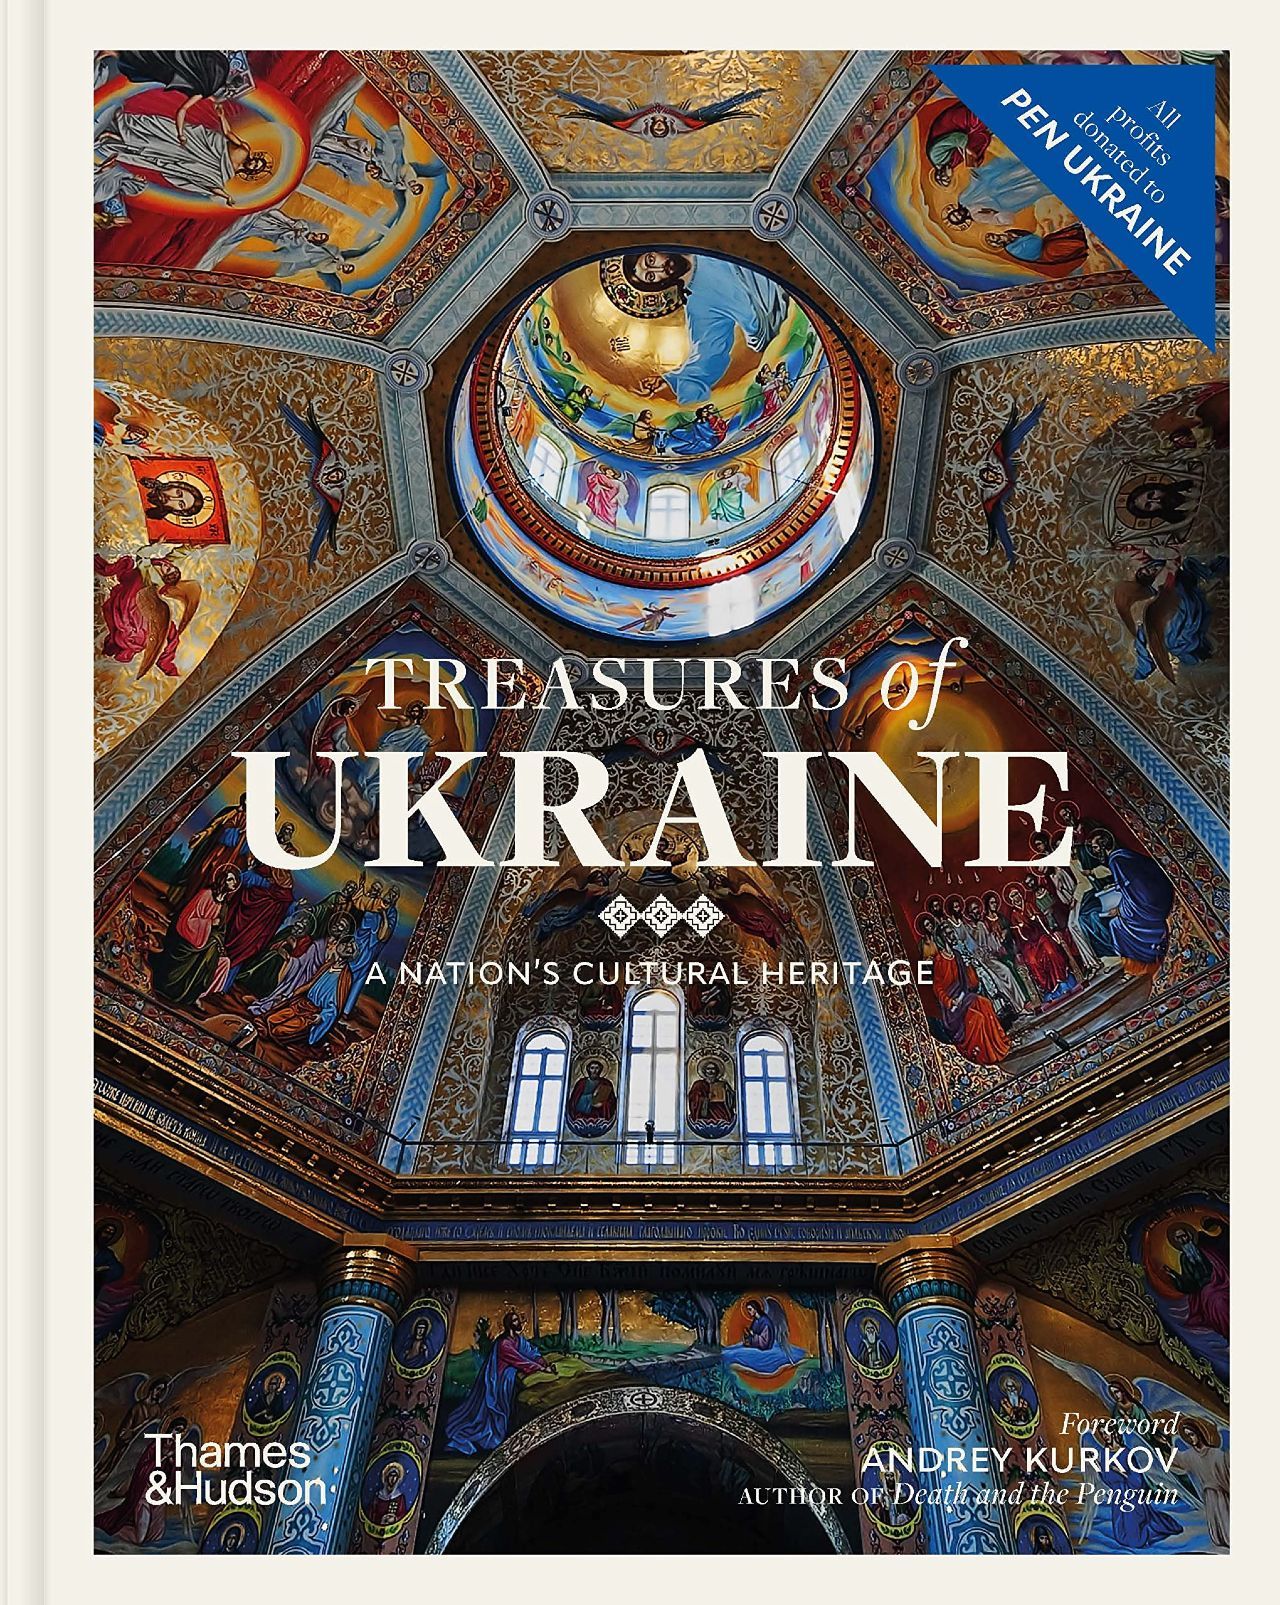 Арткнига «Скарби України» представила найважливішу спадщину нашої культури, зокрема сакральну - фото 101857